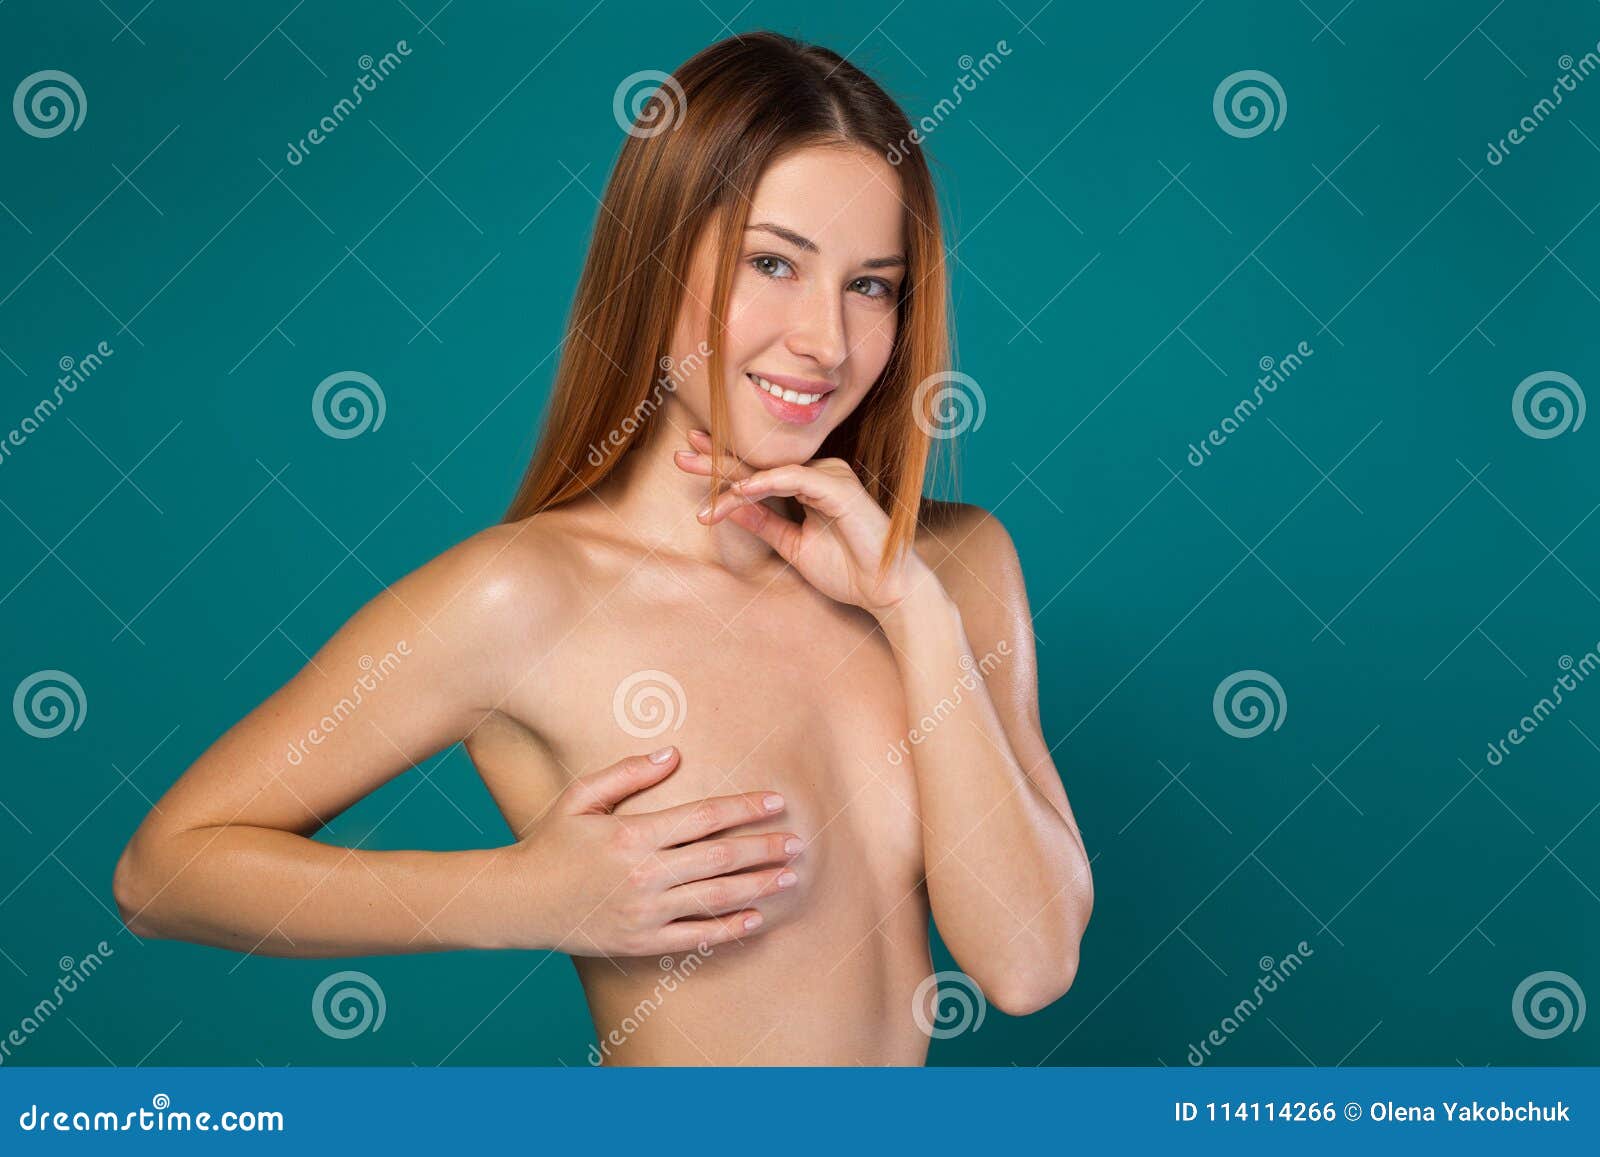 Nude african bosom photos girl